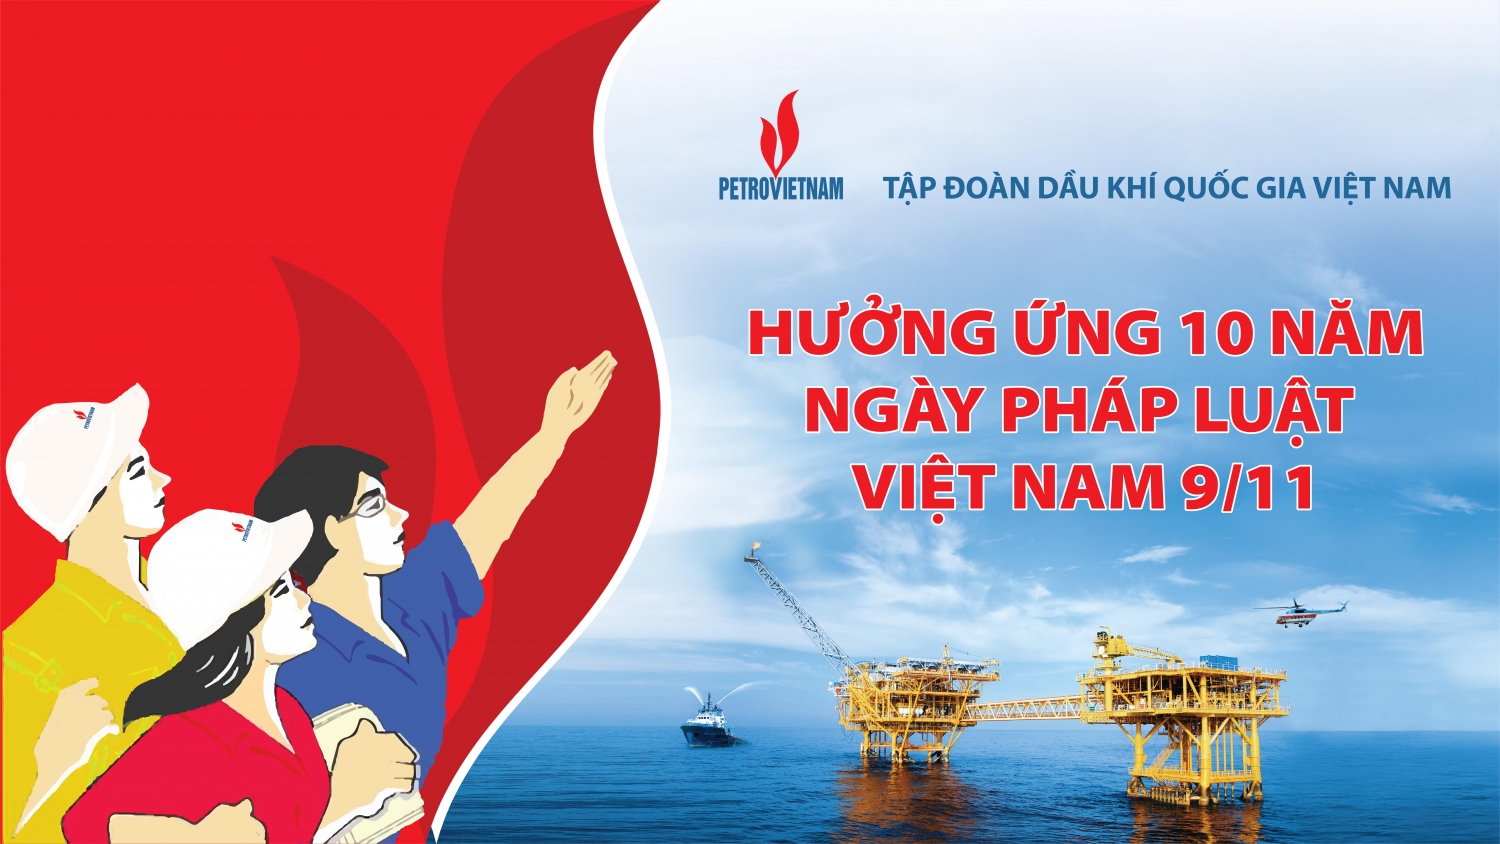 Petrovietnam phát động cuộc thi “Tìm hiểu quy định pháp luật liên quan đến hoạt động sản xuất kinh doanh của Tập đoàn Dầu khí Quốc gia Việt Nam”